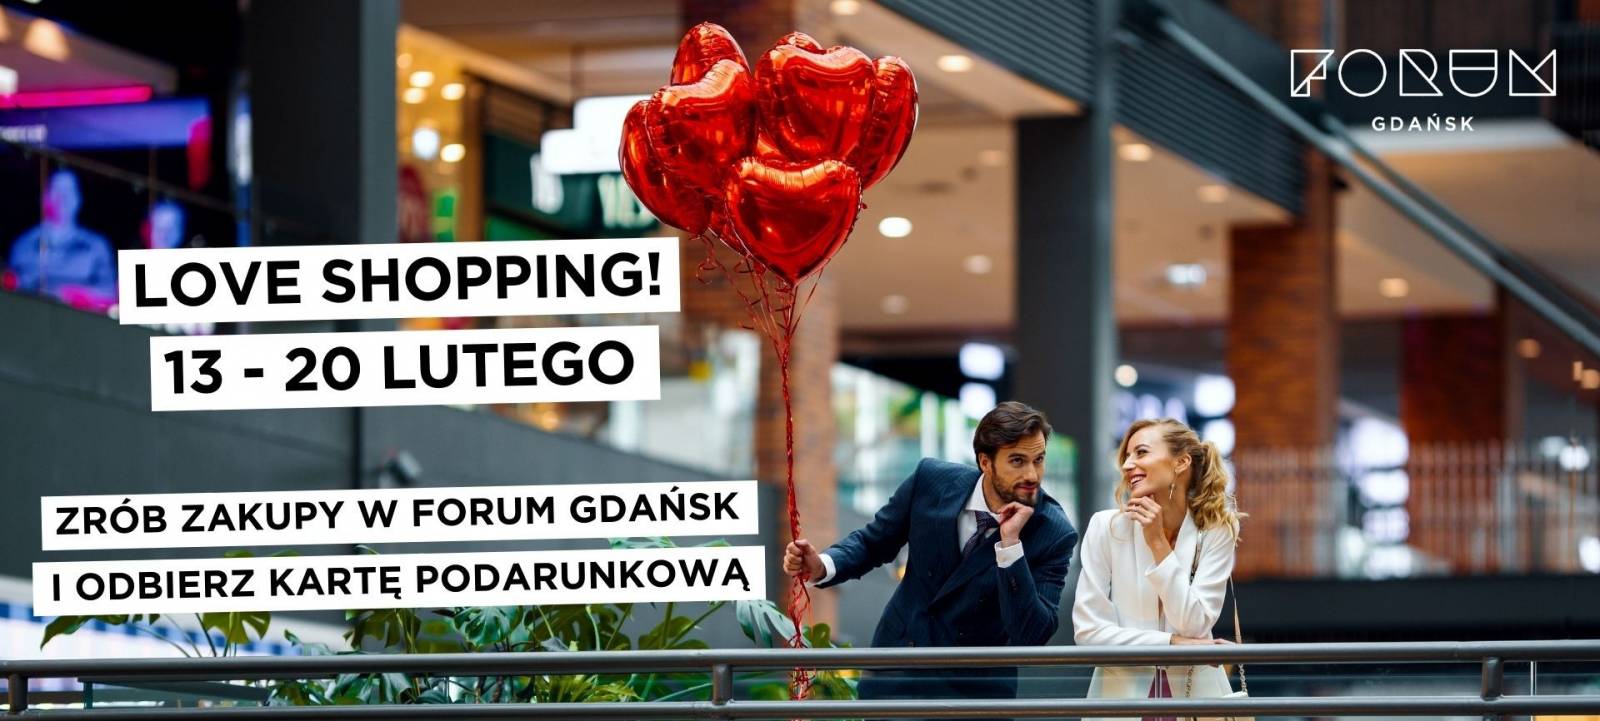 Love Shopping – Zrób zakupy i odbierz kartę podarunkową!